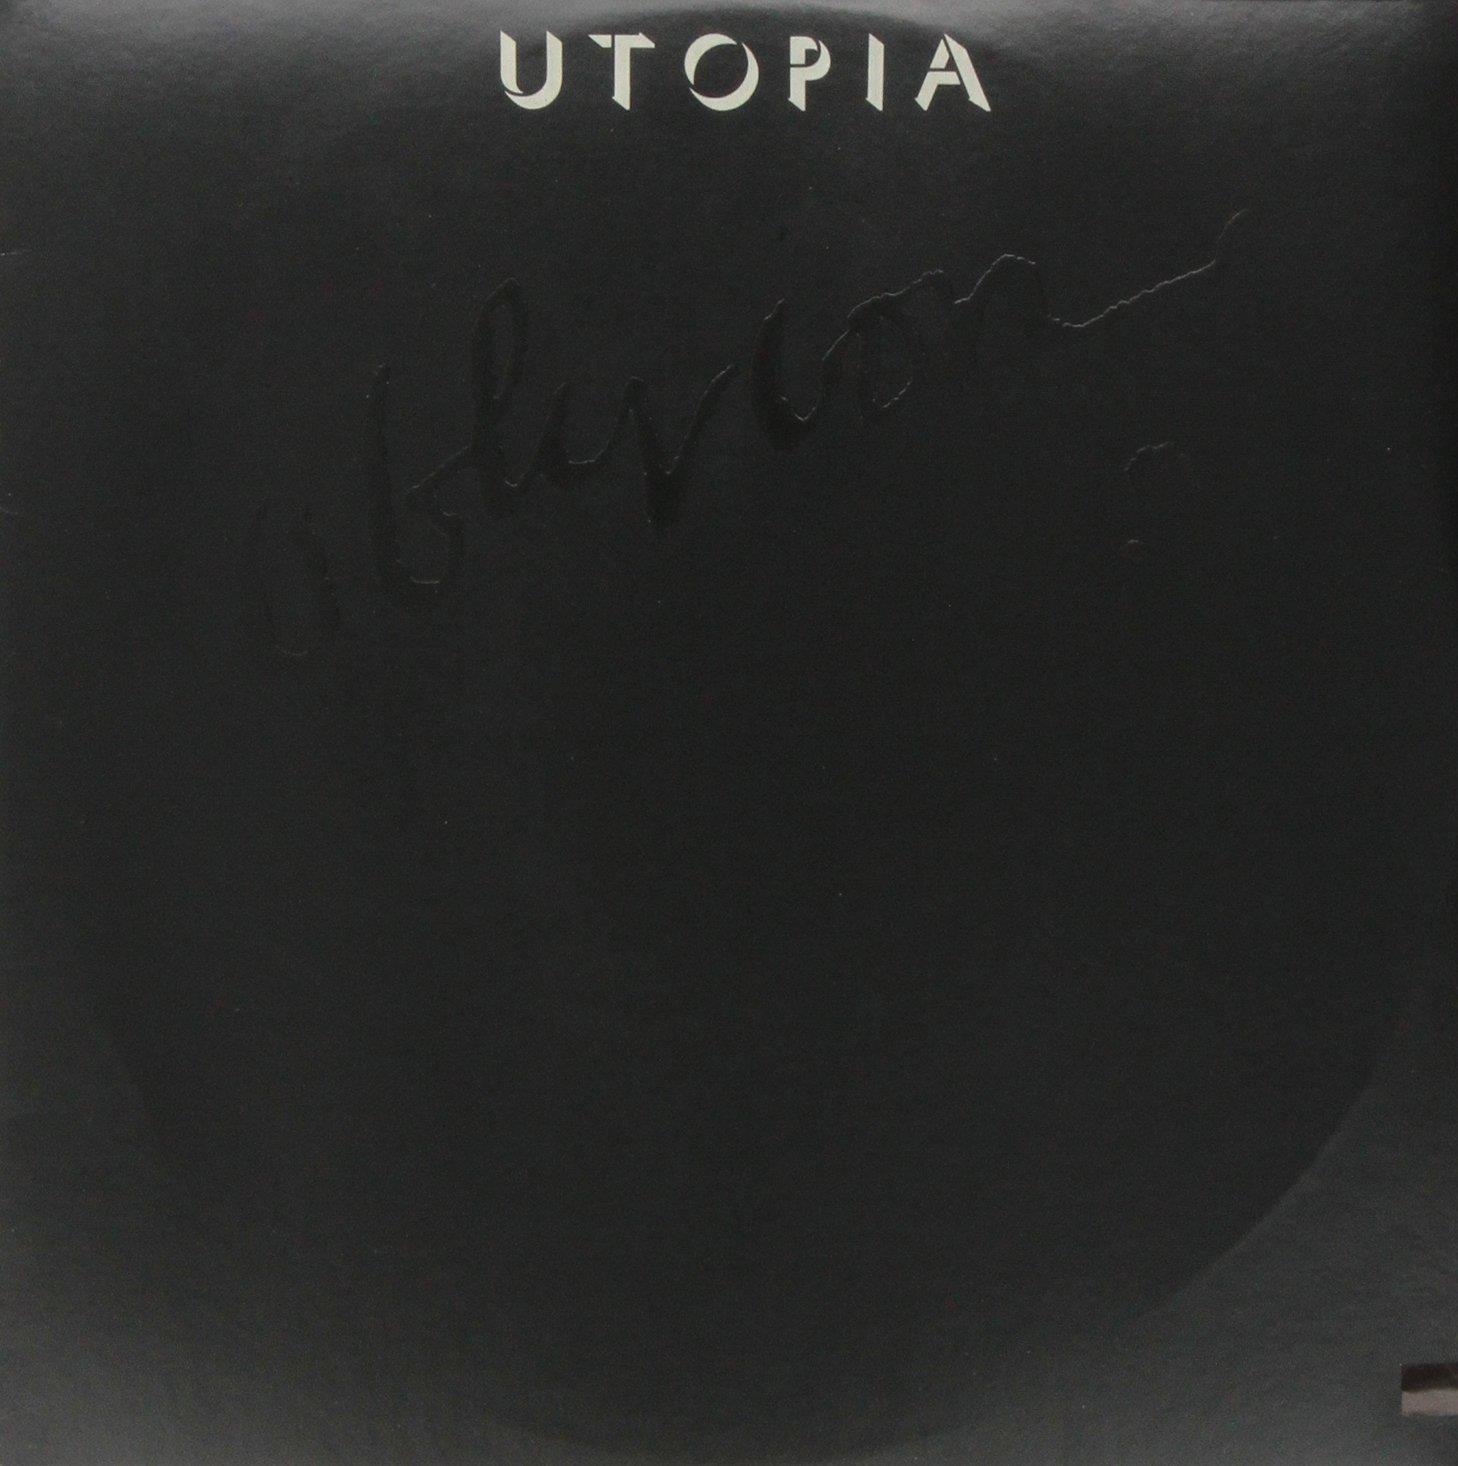 Vinile Utopia - Oblivion NUOVO SIGILLATO, EDIZIONE DEL 26/03/2013 SUBITO DISPONIBILE